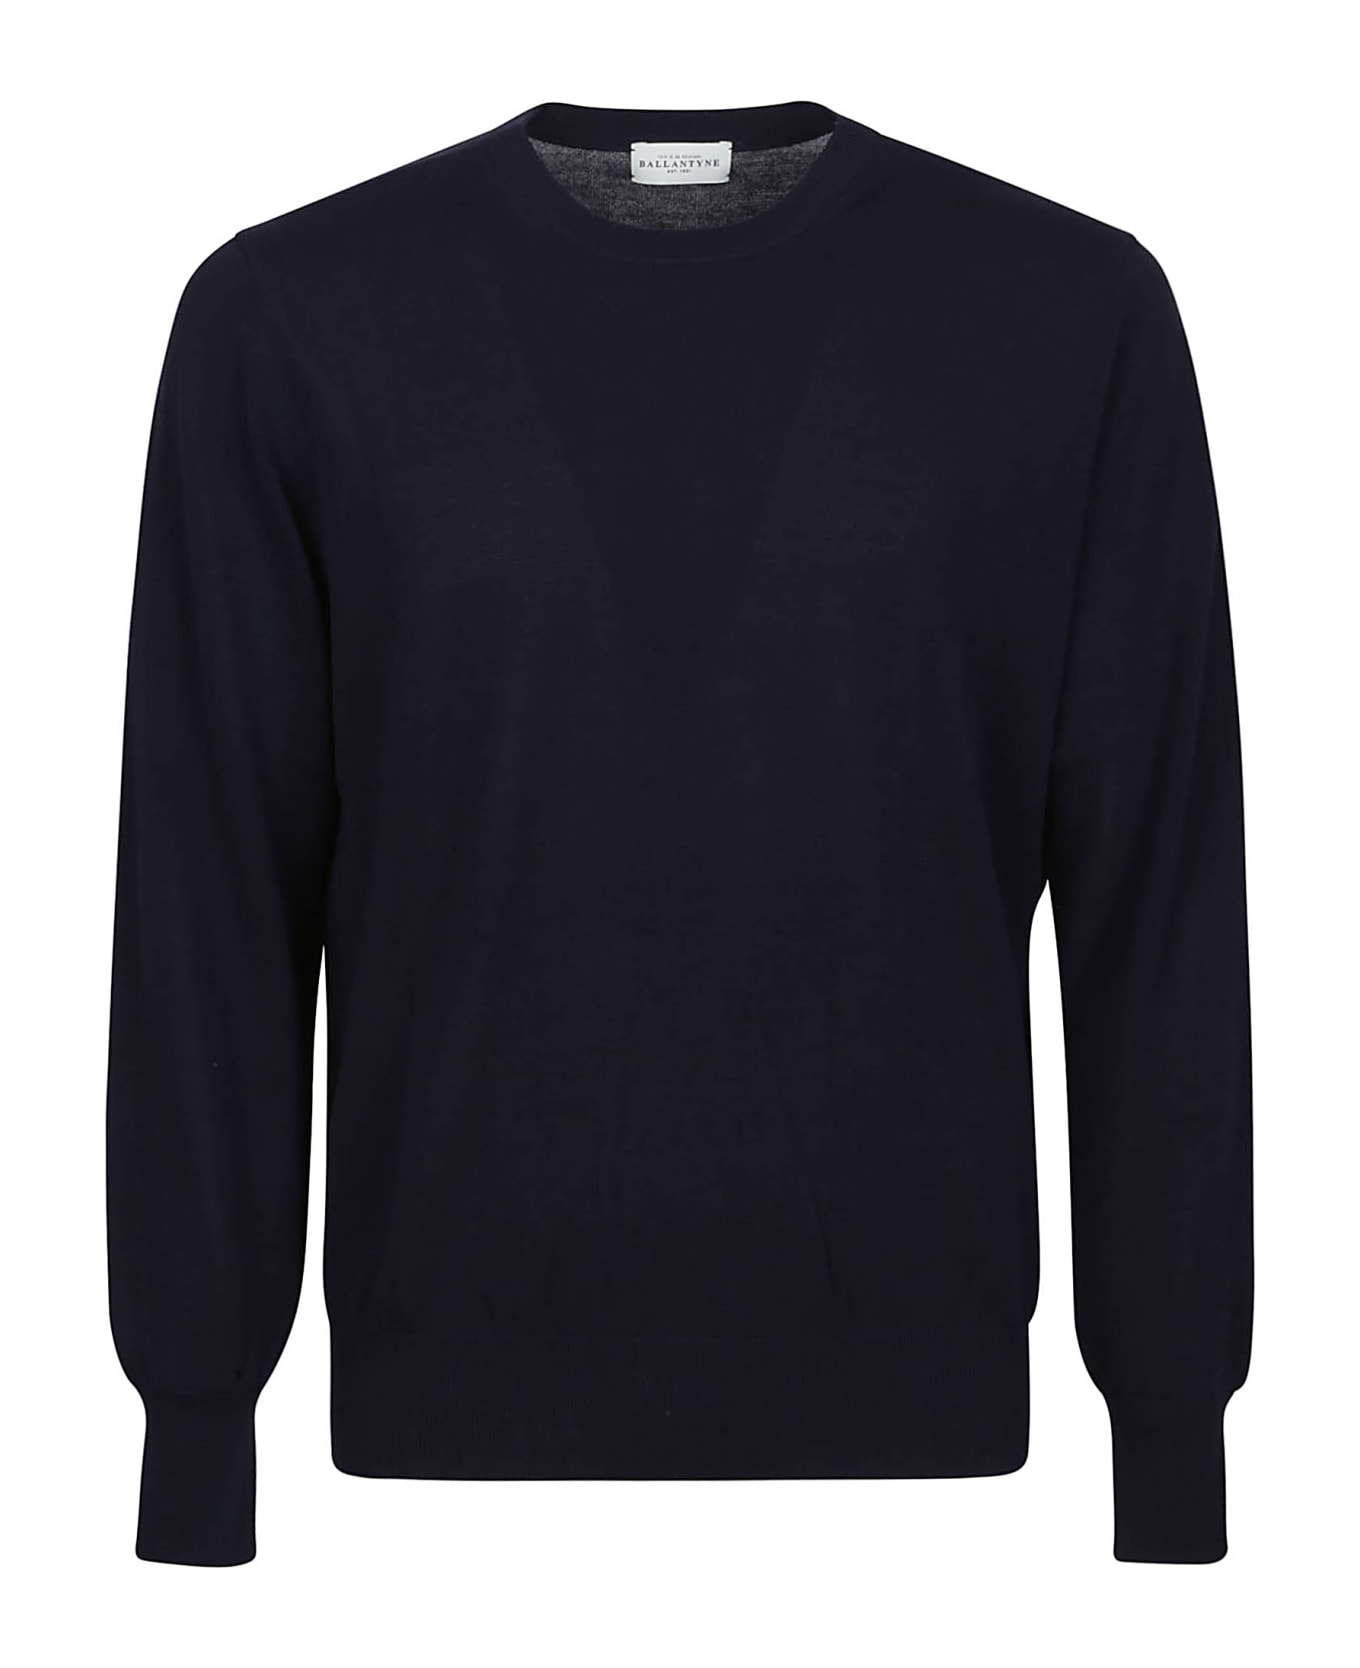 Ballantyne Plain Sweater - Navy ニットウェア